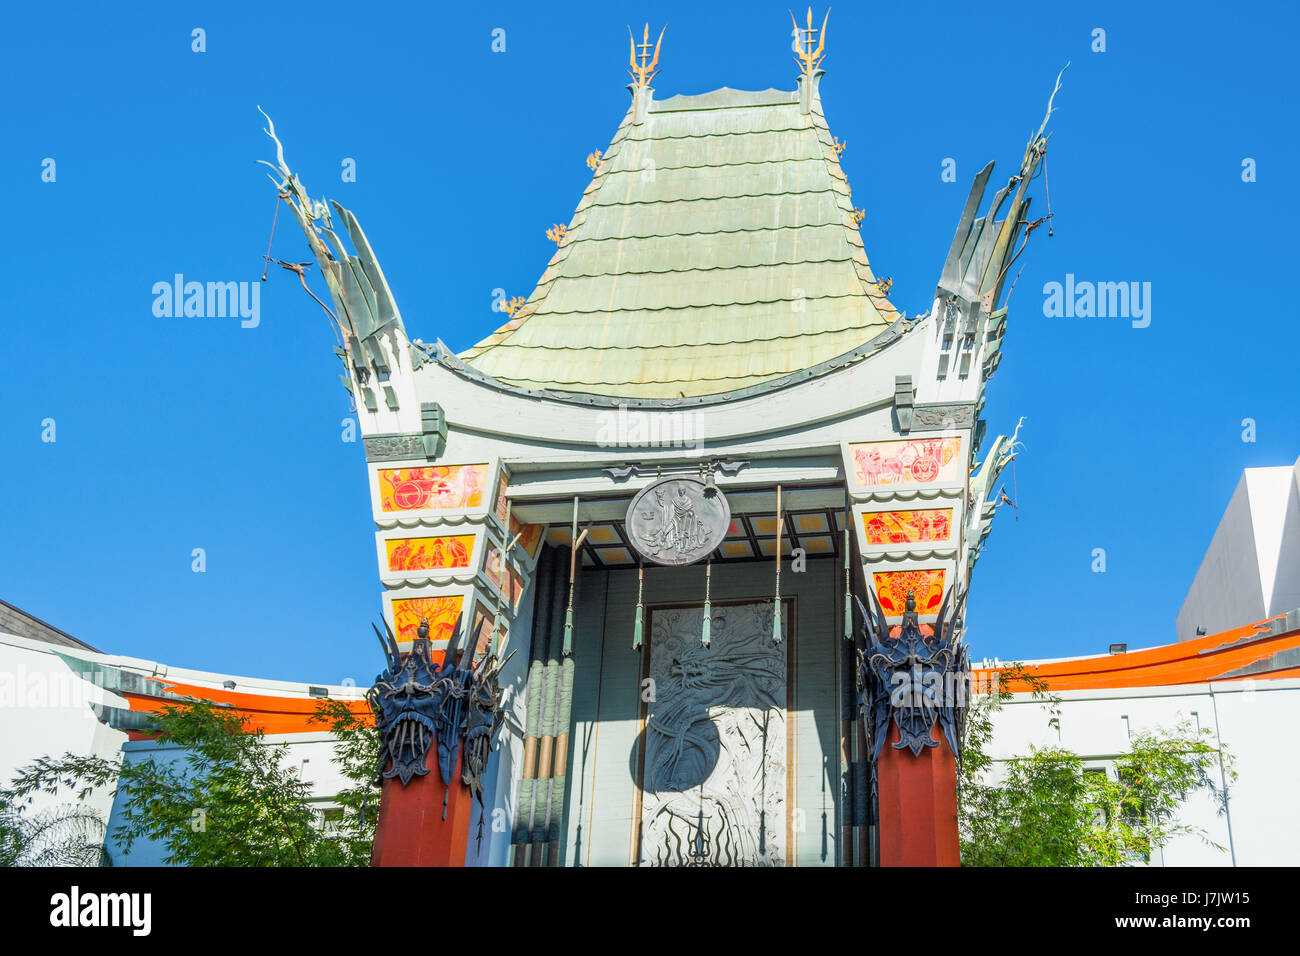 LOS ANGELES, CALIFORNIE - Novembre 02, 2016 : le Grauman's Chinese Theatre sur Hollywood Boulevard Banque D'Images